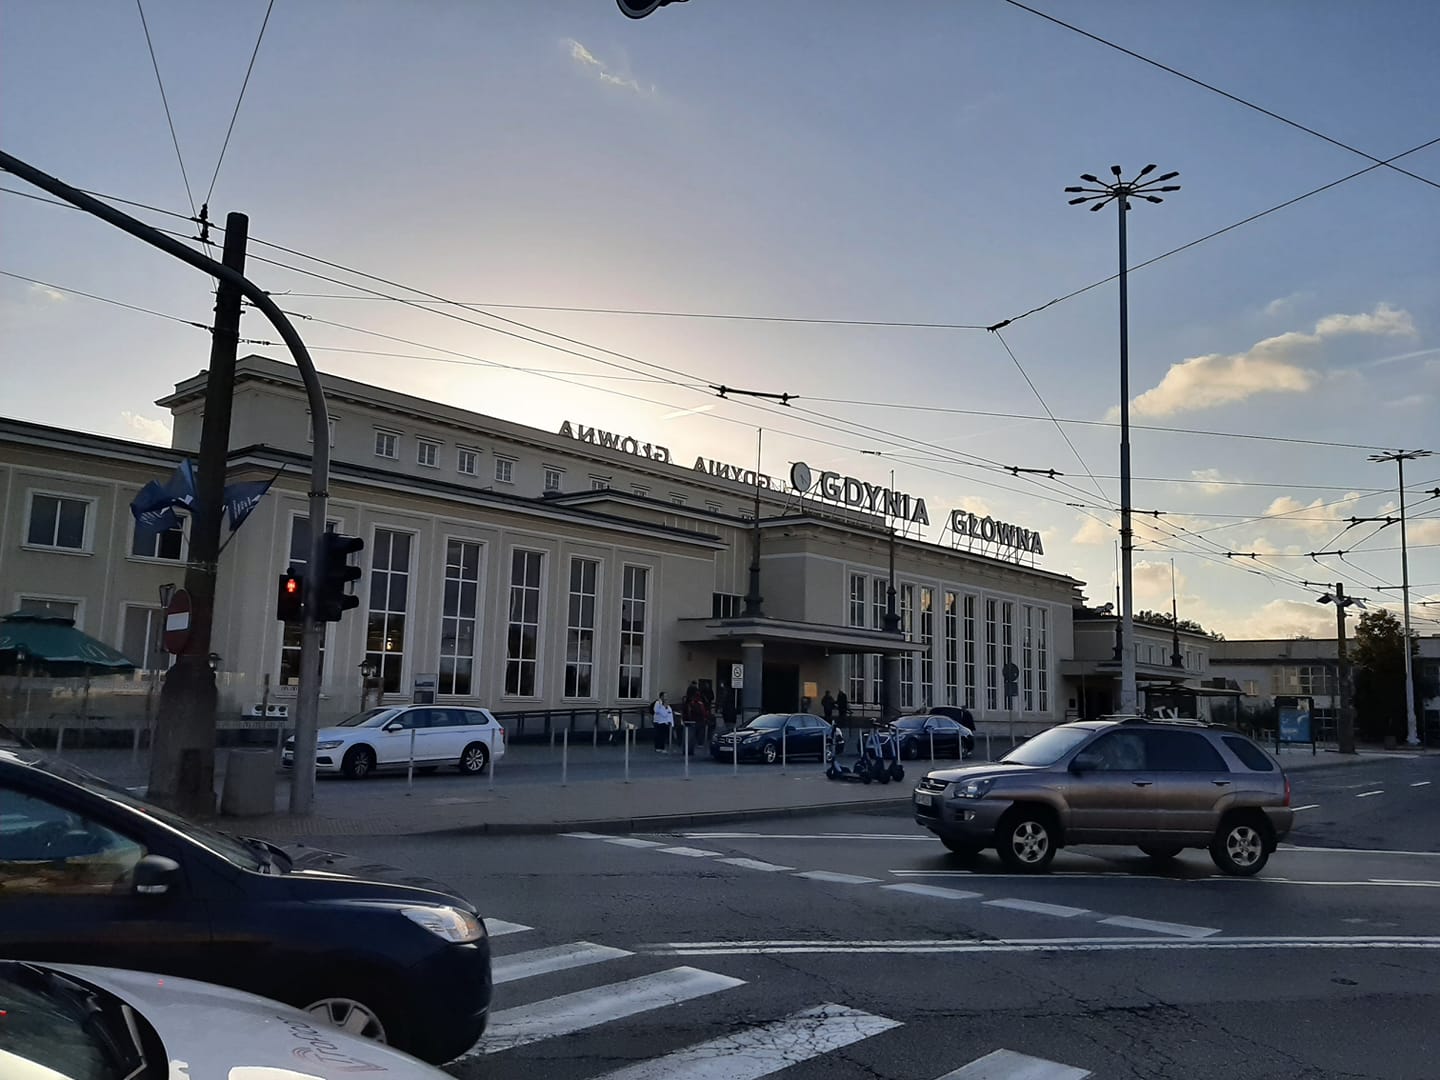 Budynek Dworca Gdynia Główna PKP, który przeszedł remont w 2012 roku, fot. Miriam Emessaouden / z naszej facebookowej grupy Gdynia w obiektywie